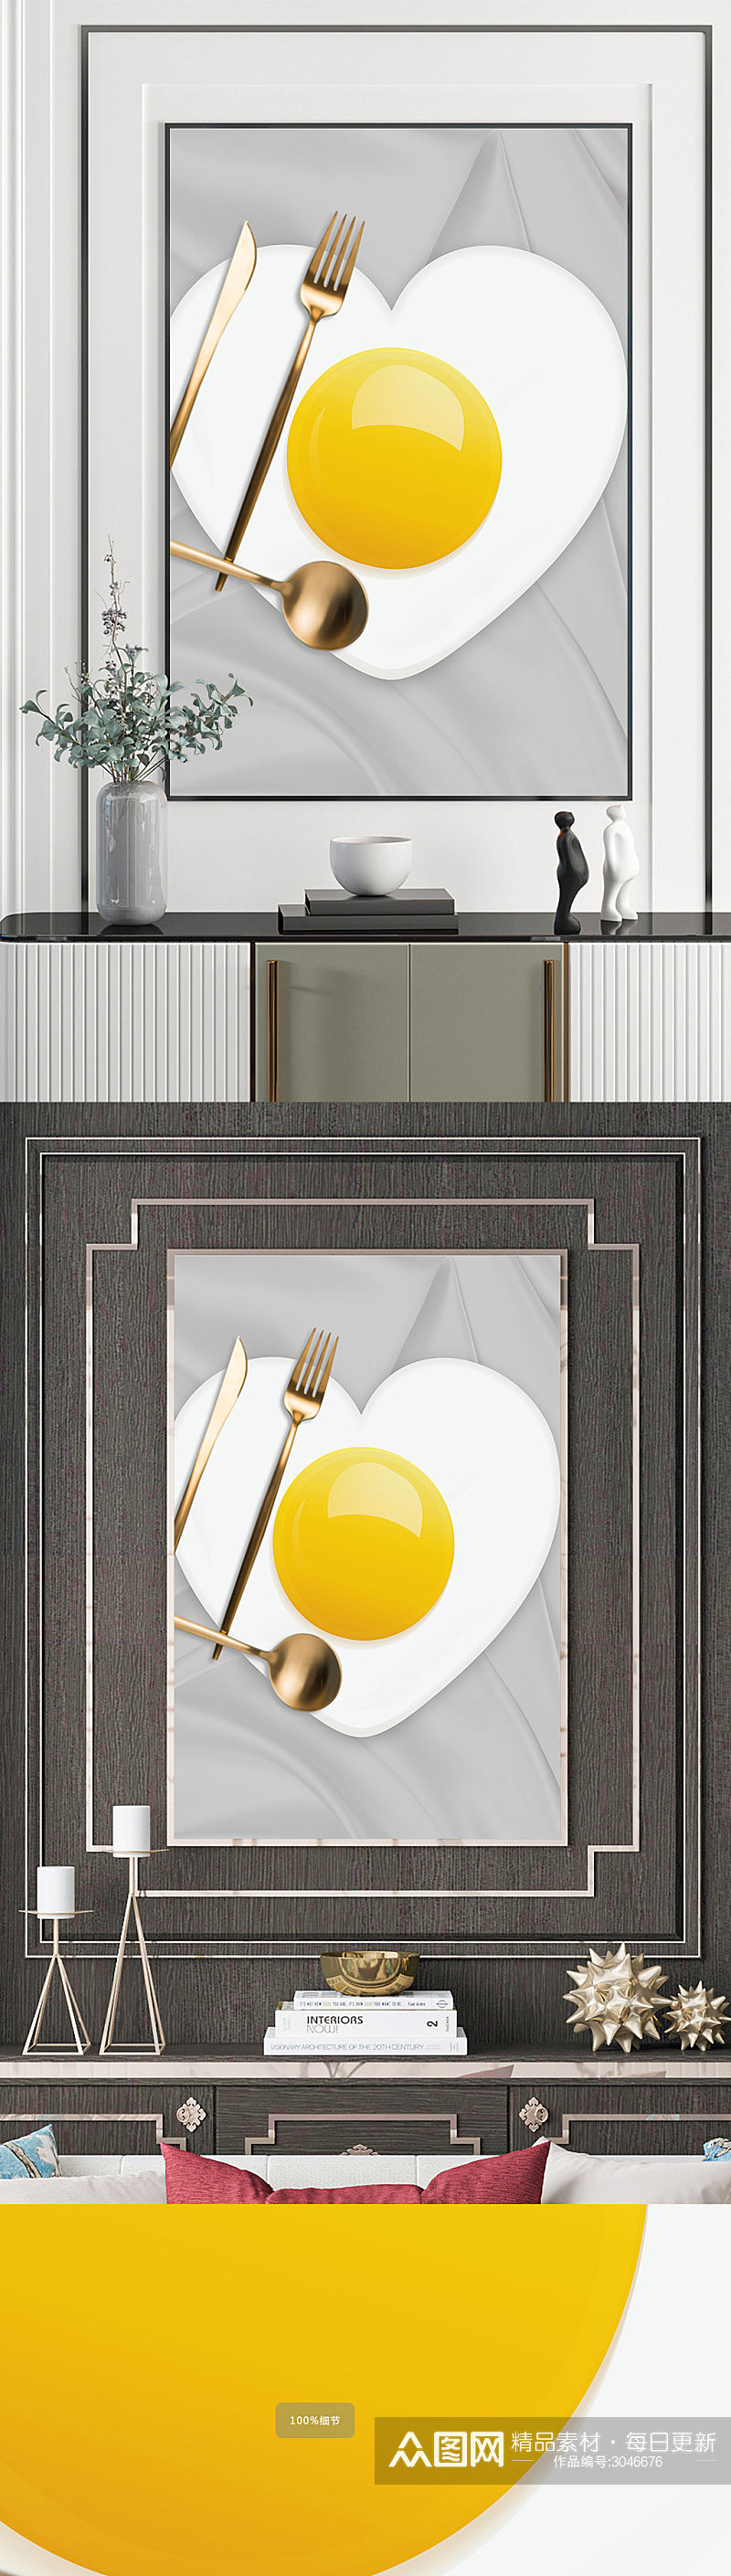 餐厅鸡蛋厨房装饰画素材